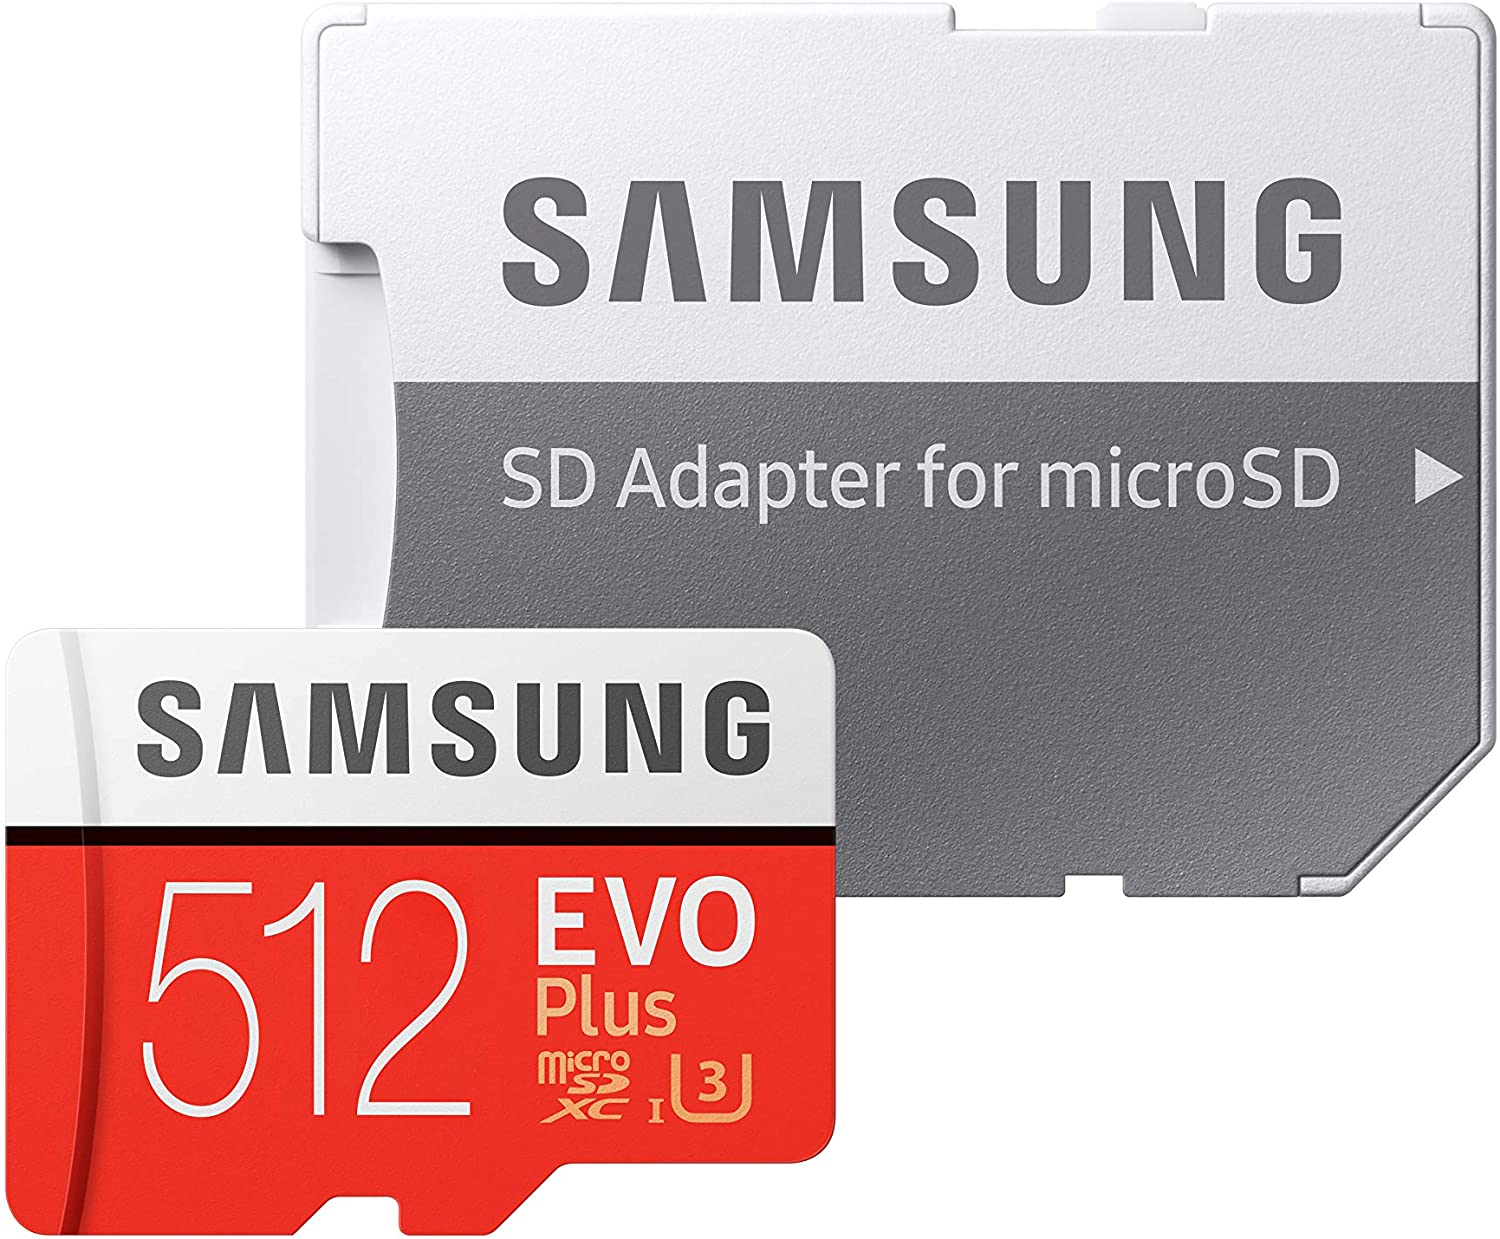 【Amazonタイムセール】Samsung EVO Plus UHS-I U3 microSD カードが特価販売中